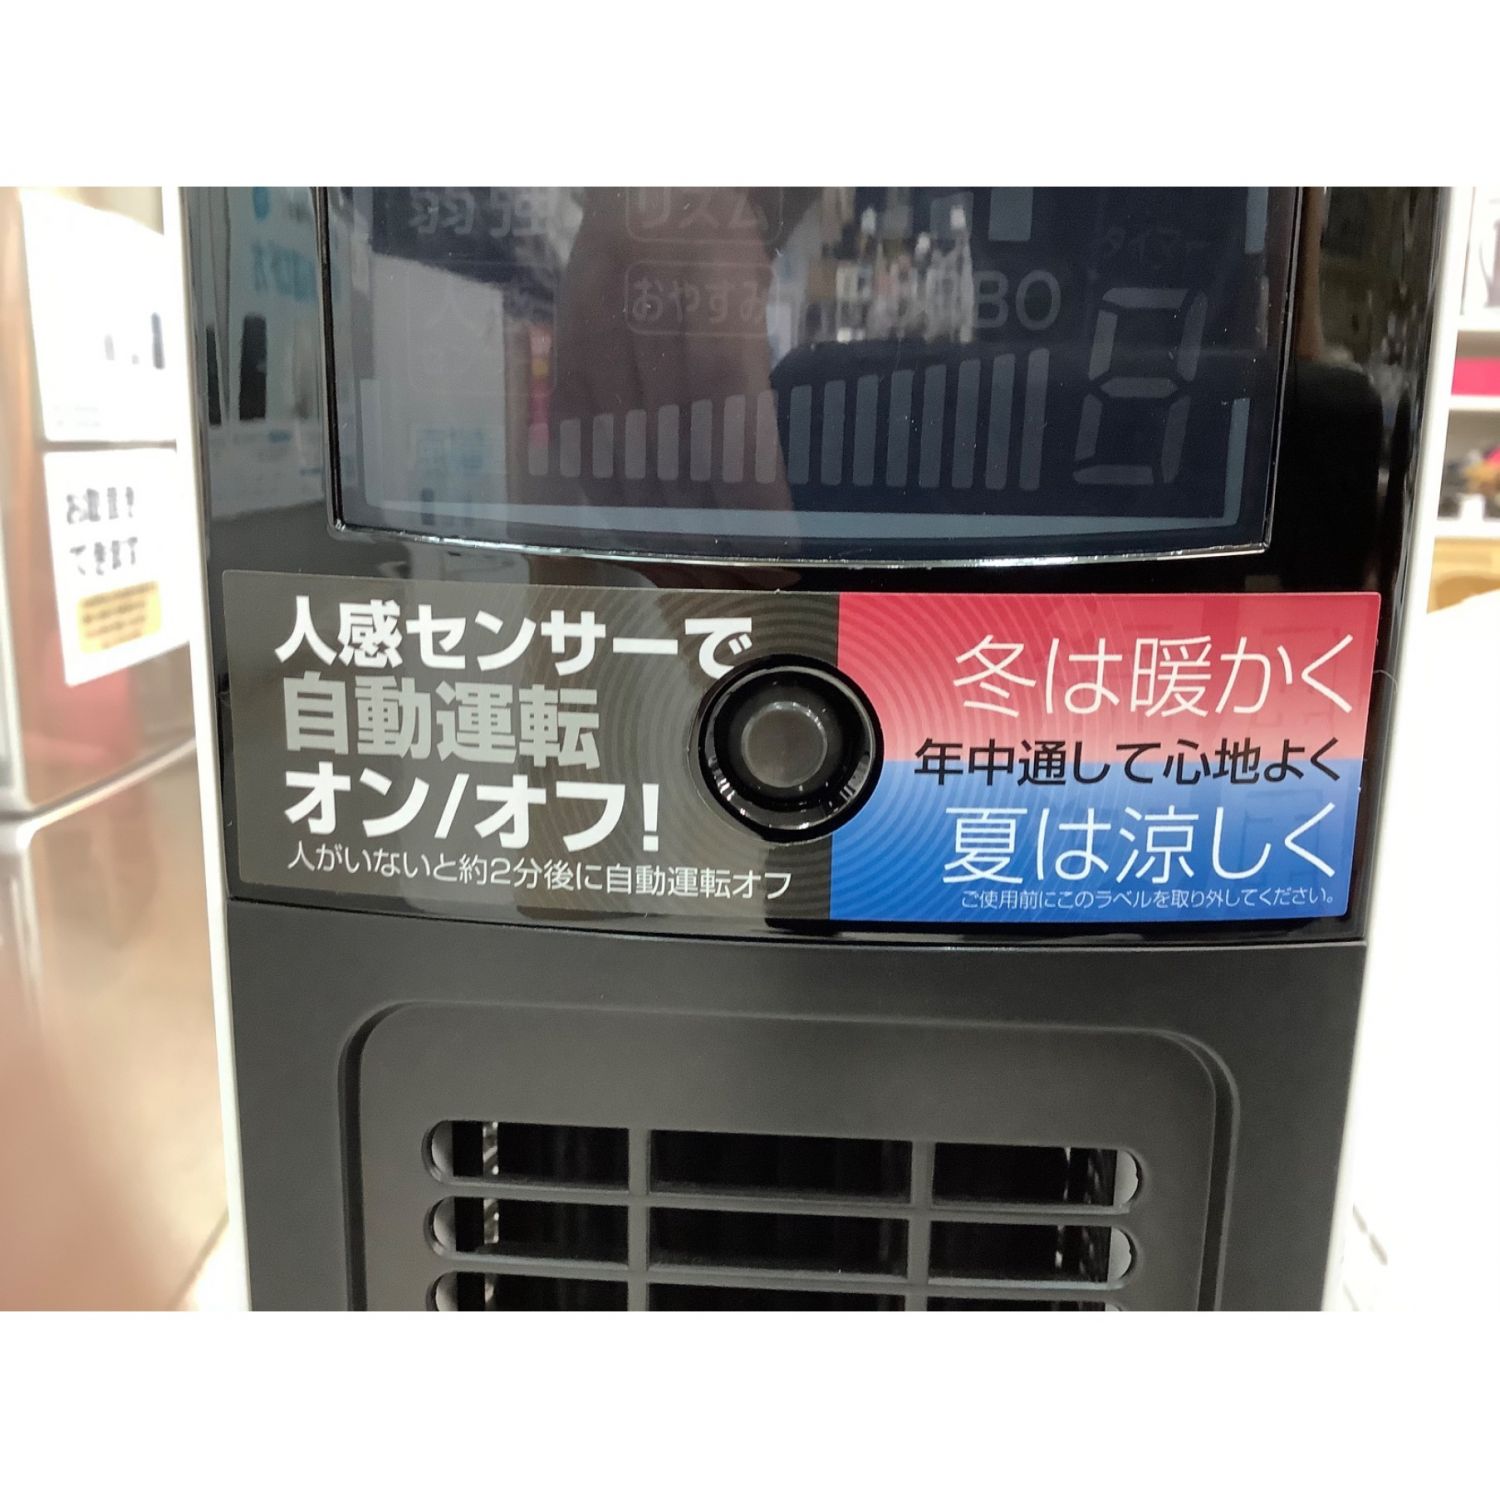 KOIZUMI (コイズミ) 2019年製 送風機能付ファンヒーター KHF-1291 2019 